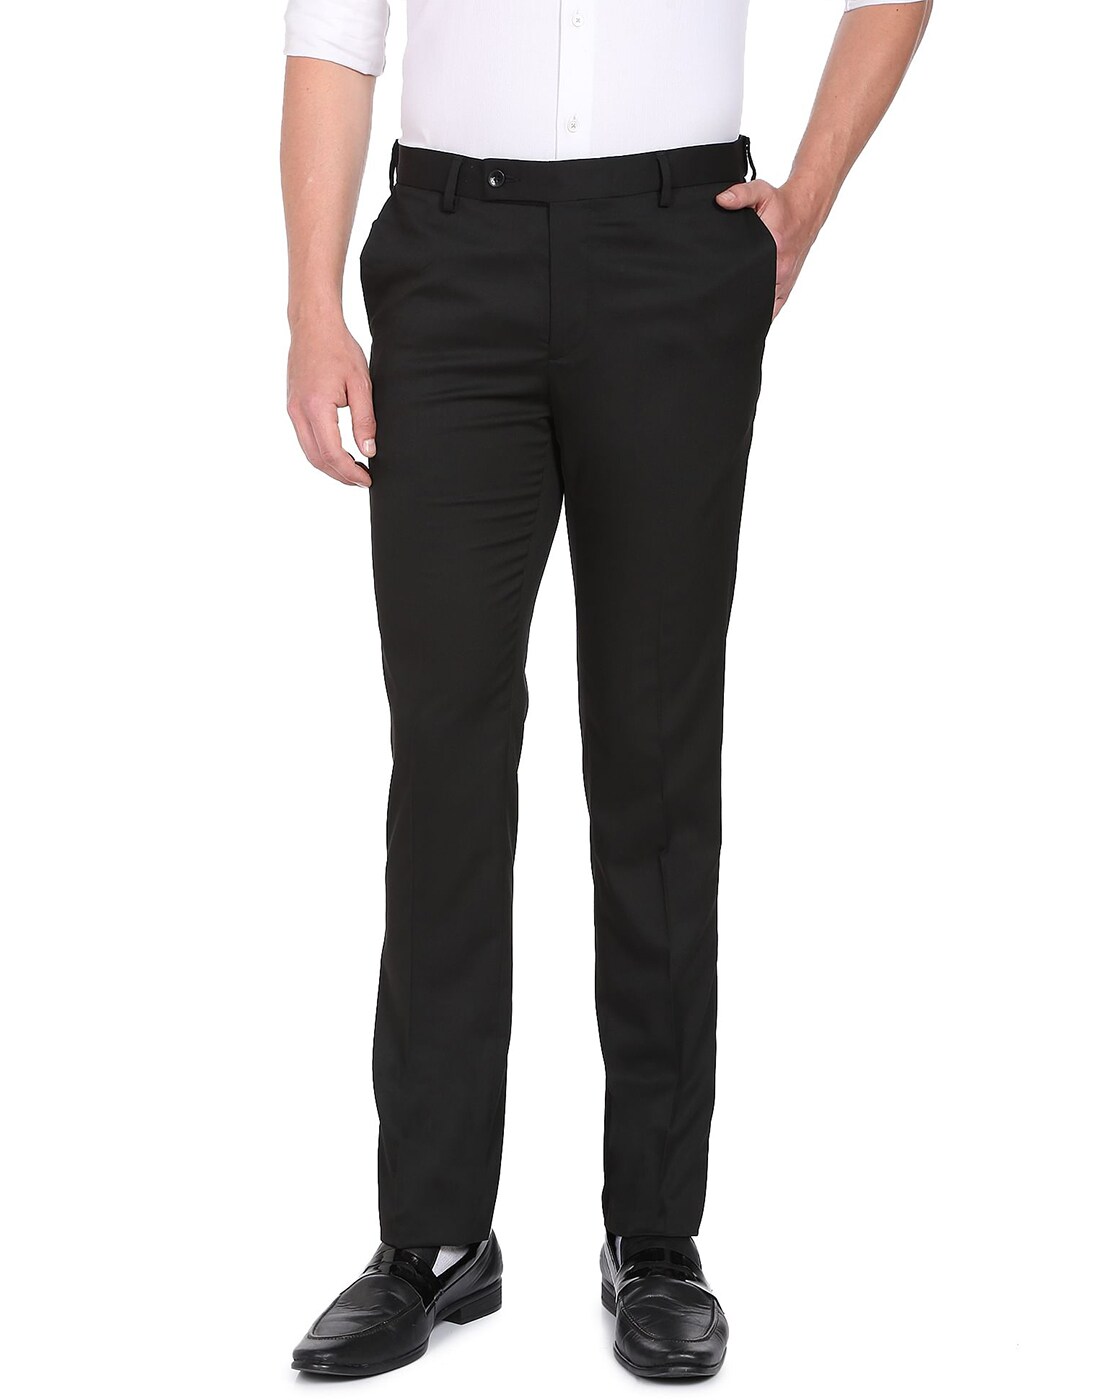 Buy Beige Trousers  Pants for Men by ARROW Online  Ajiocom